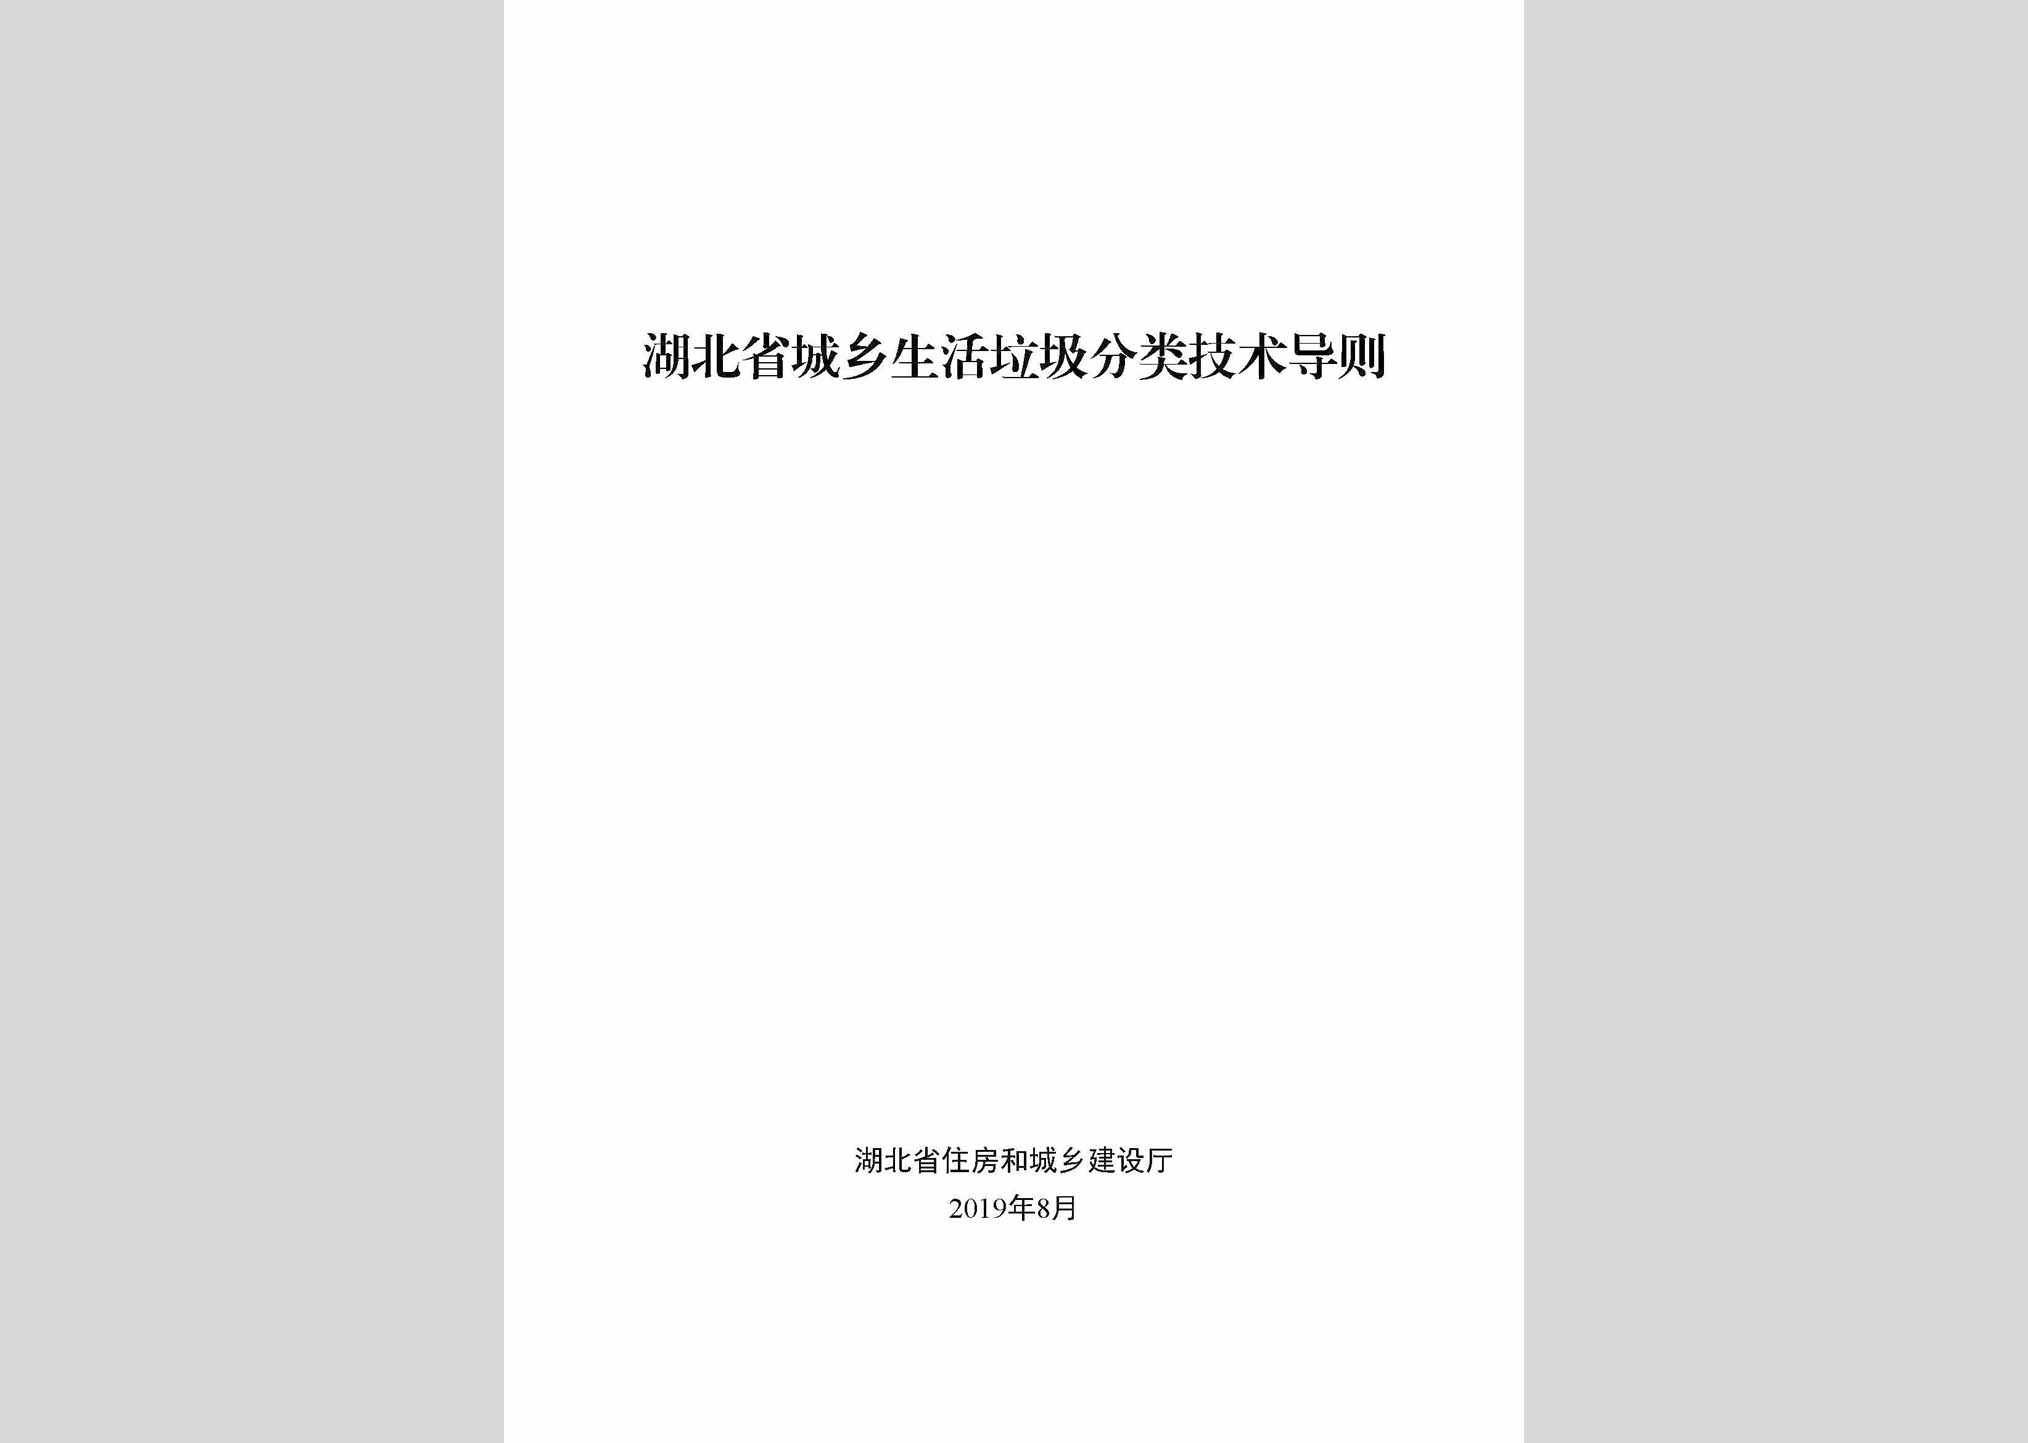 HBCXLJDZ：湖北省城乡生活垃圾分类技术导则